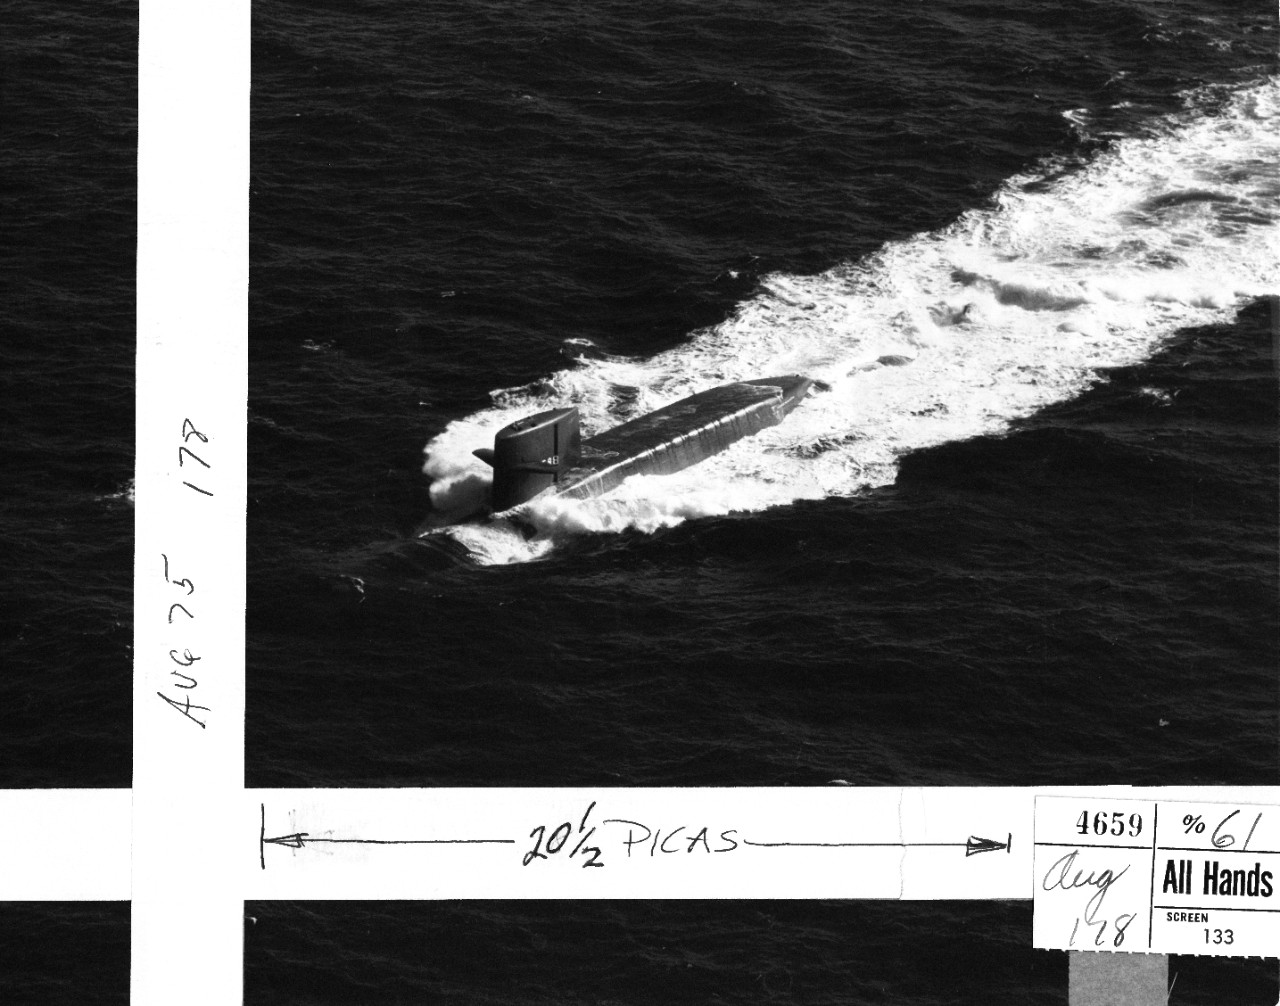 <p>L45-108-08-026 Sea Trials USS George Washington (SSBN-598)</p>
